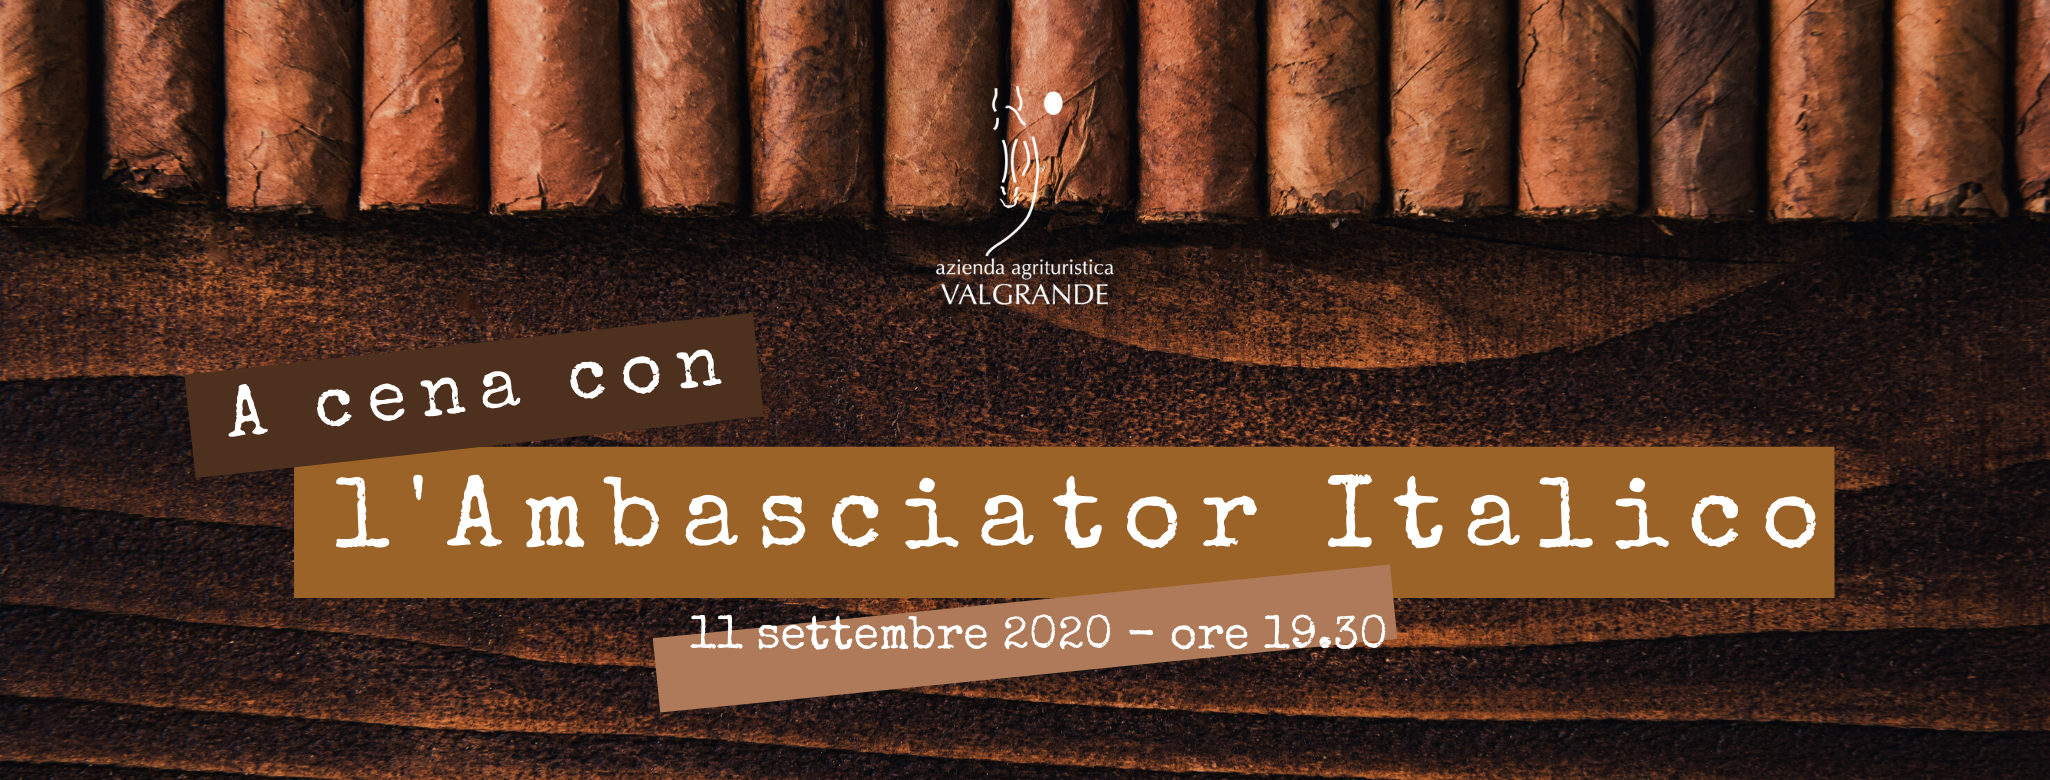 A cena con l’Ambasciator Italico – 11 settembre 2020